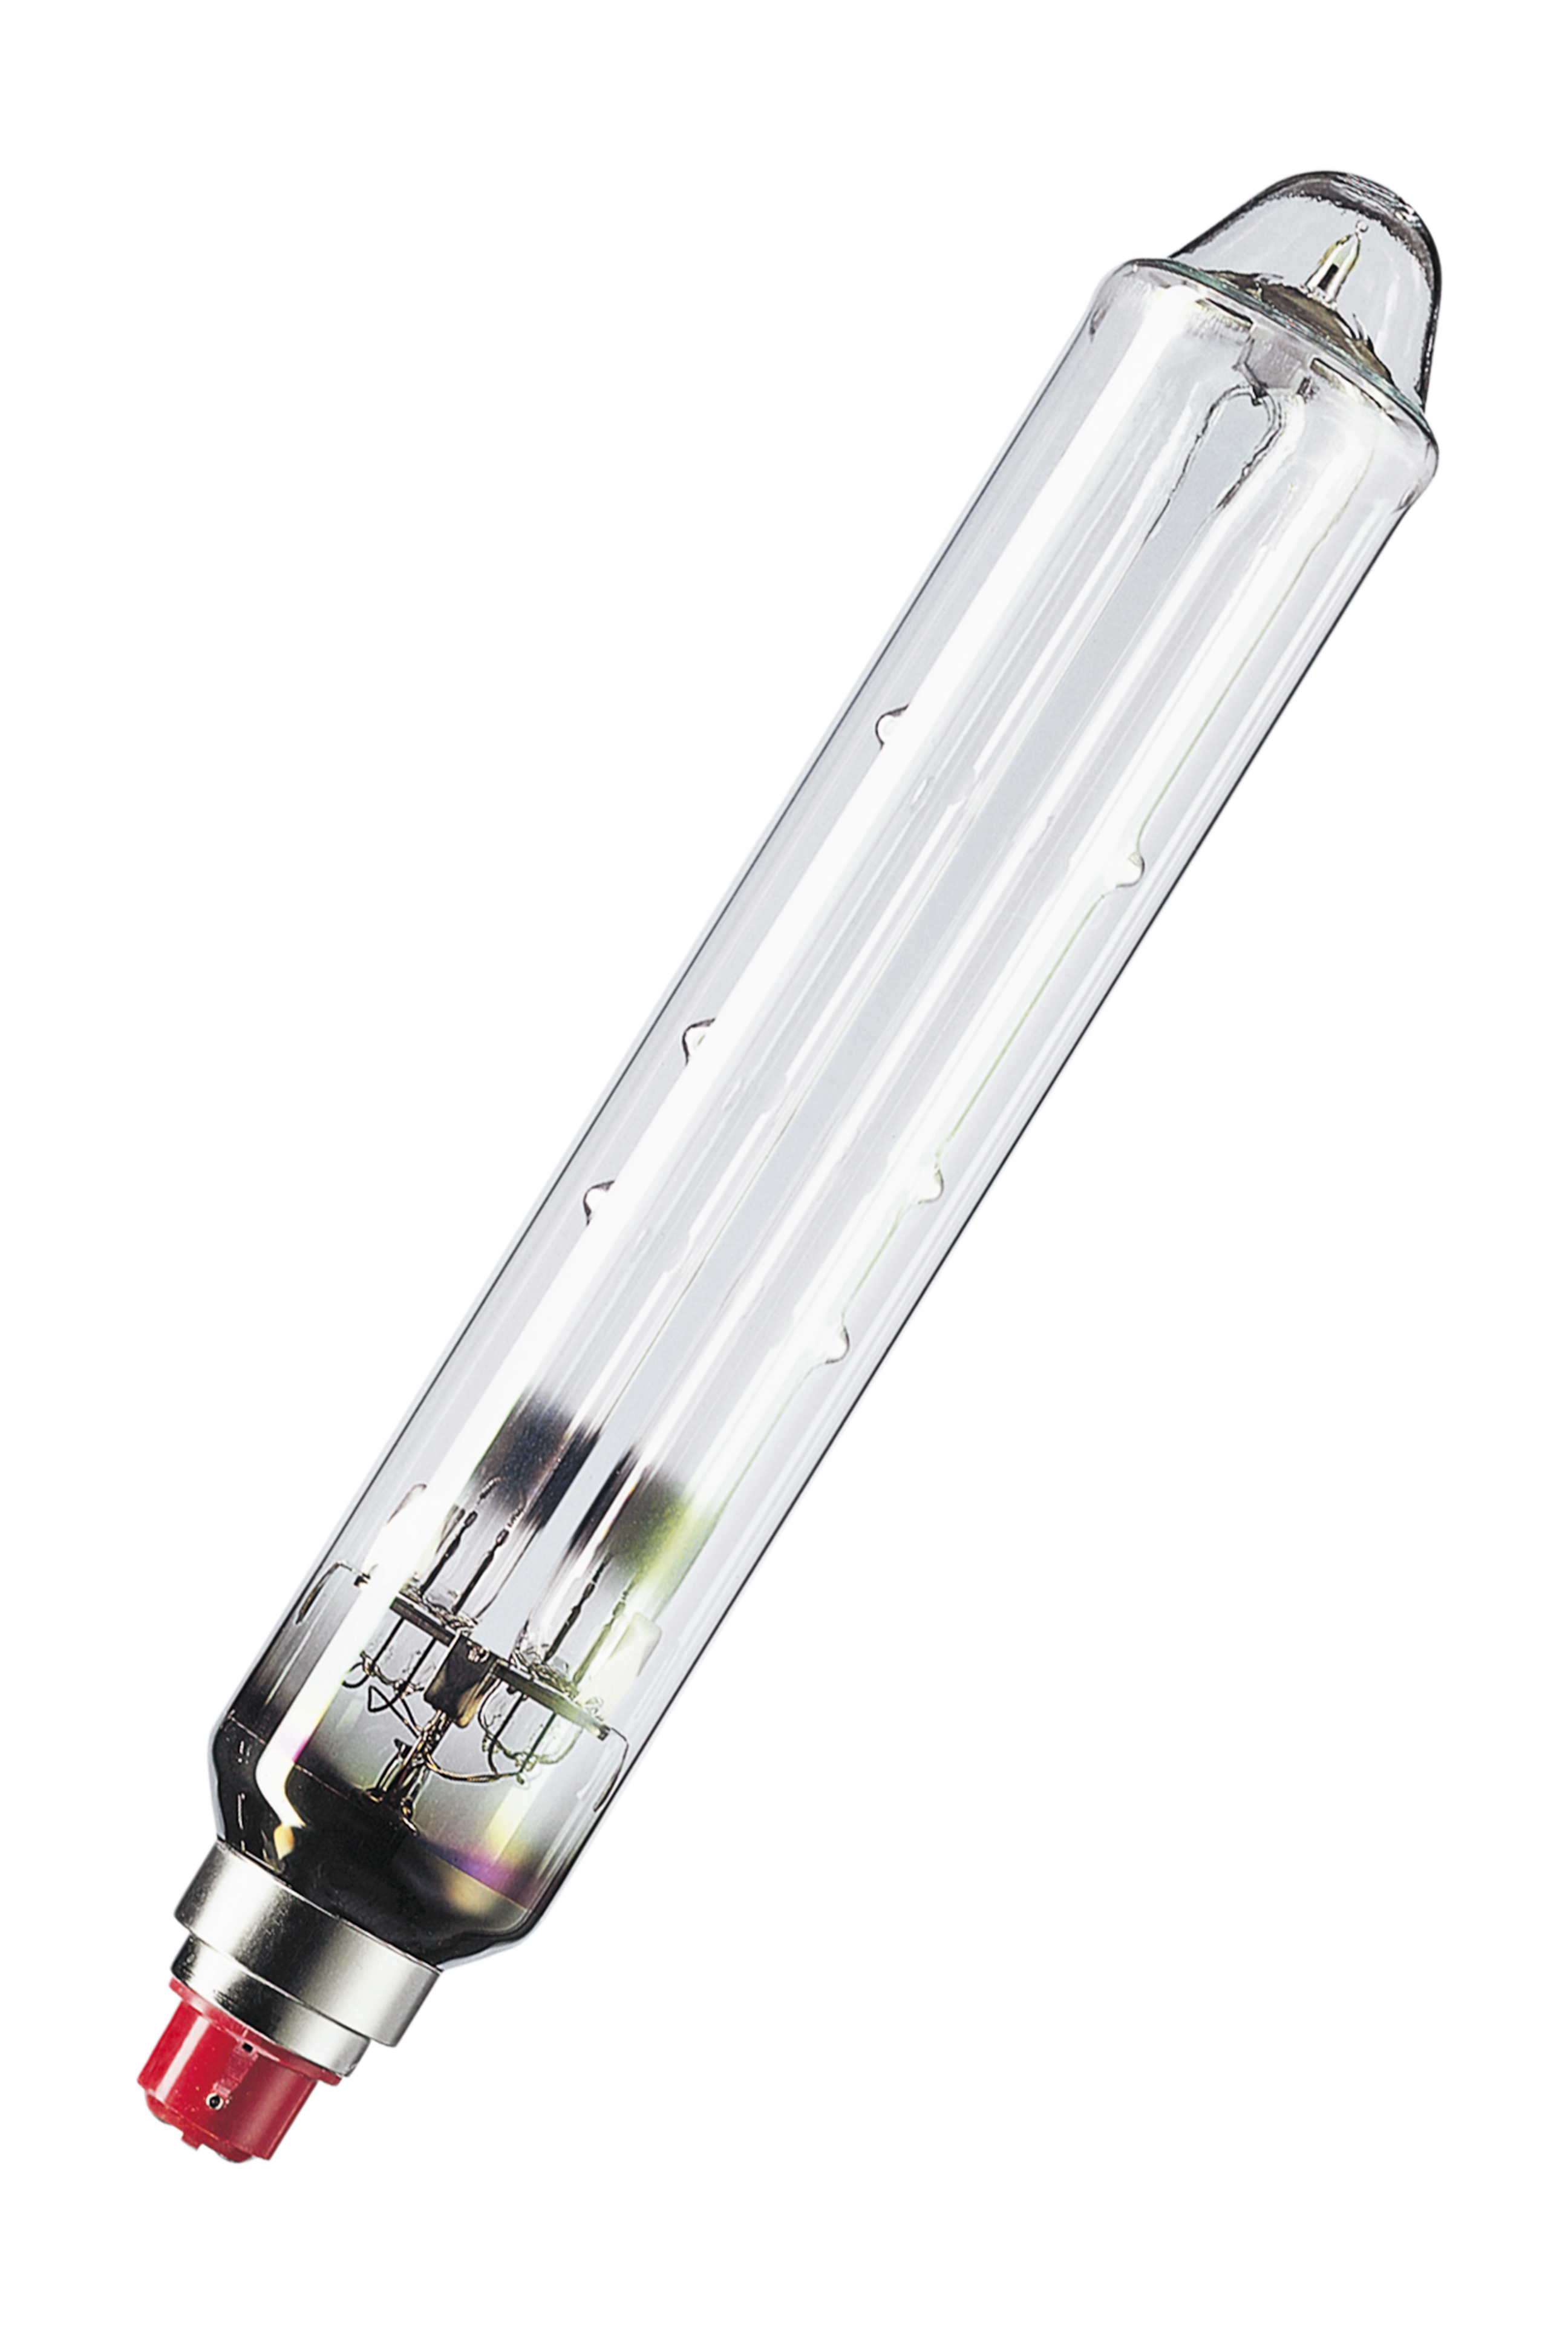 Low pressure sodium-vapour lamp